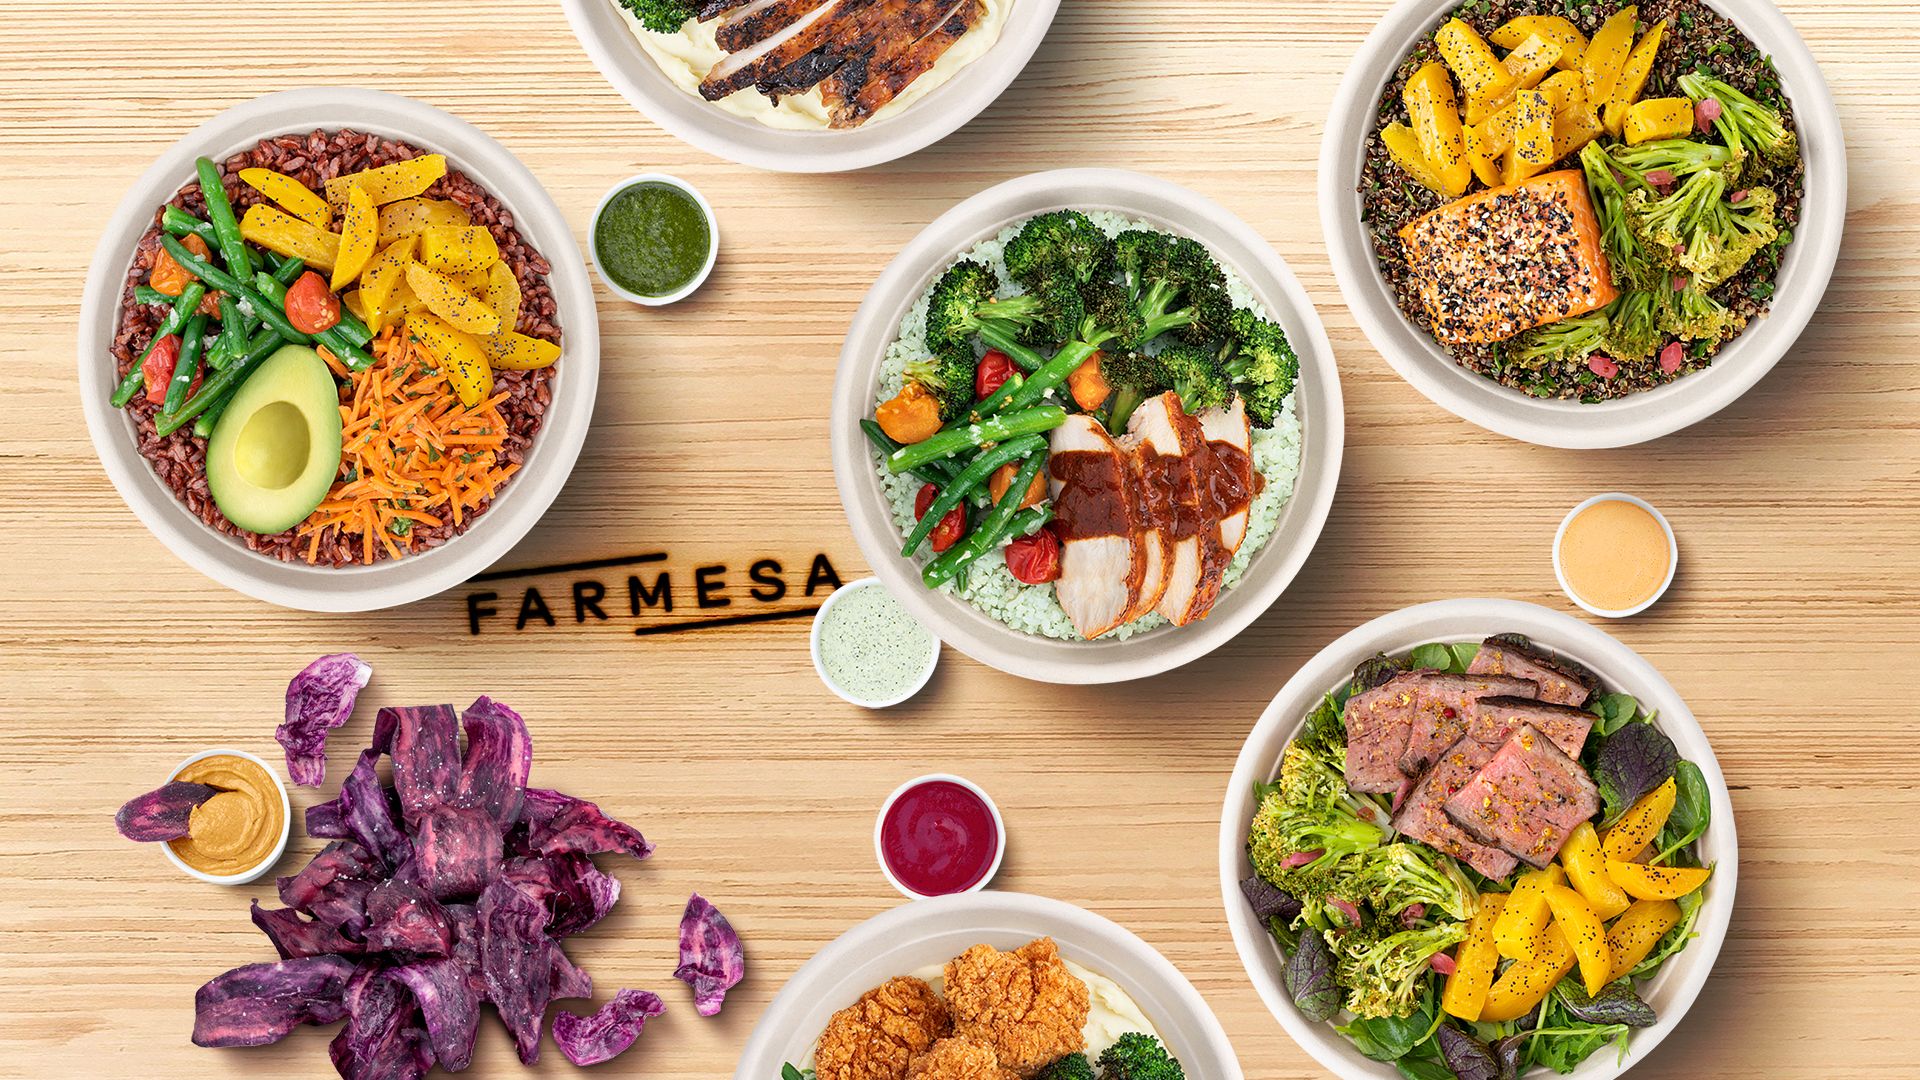 Chipotle lança restaurante Farmesa, focado em alimentos frescos